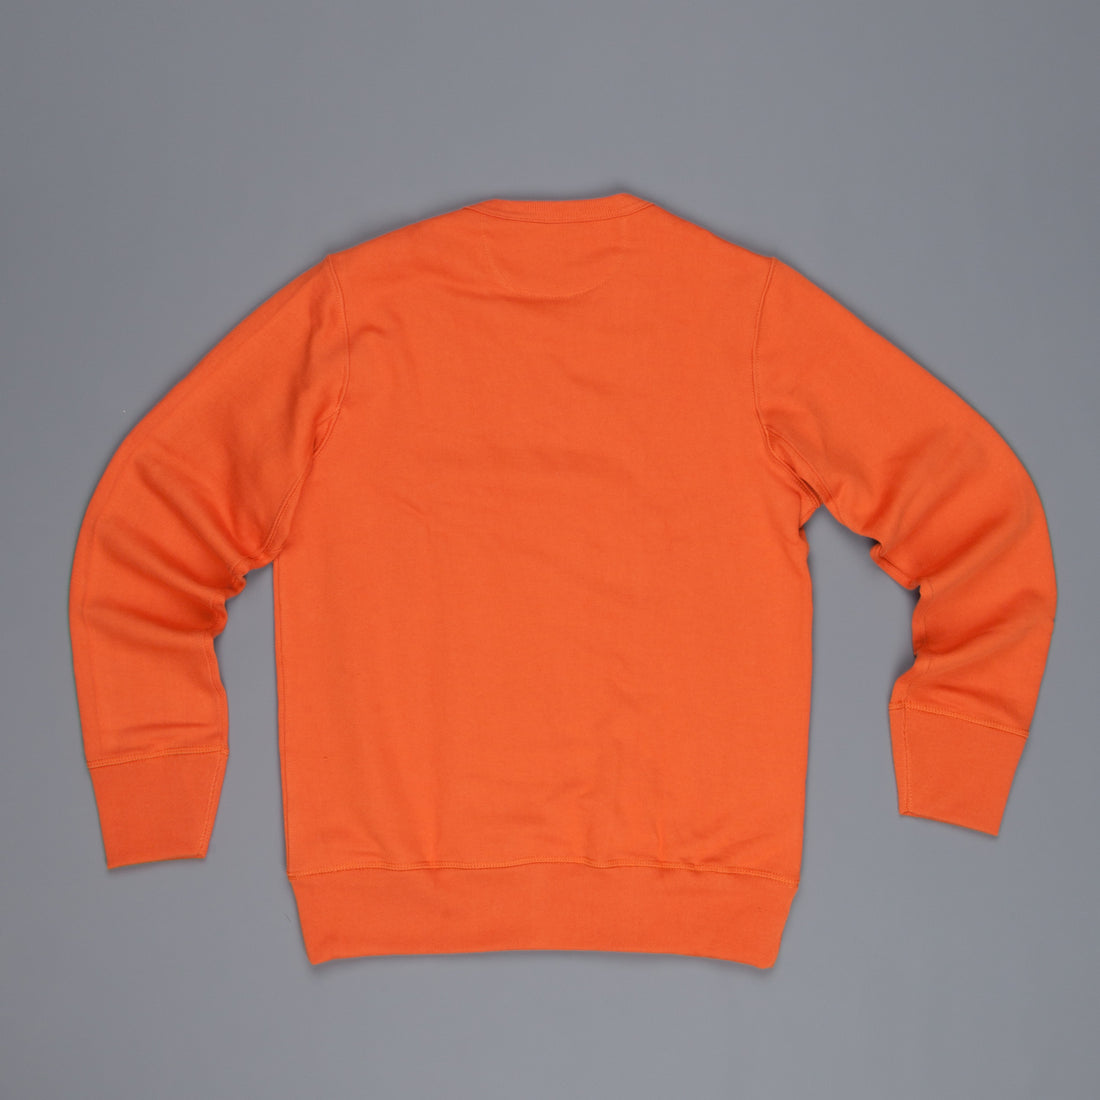 Merz B Schwanen 3s48 Strong fleece sweater Rust